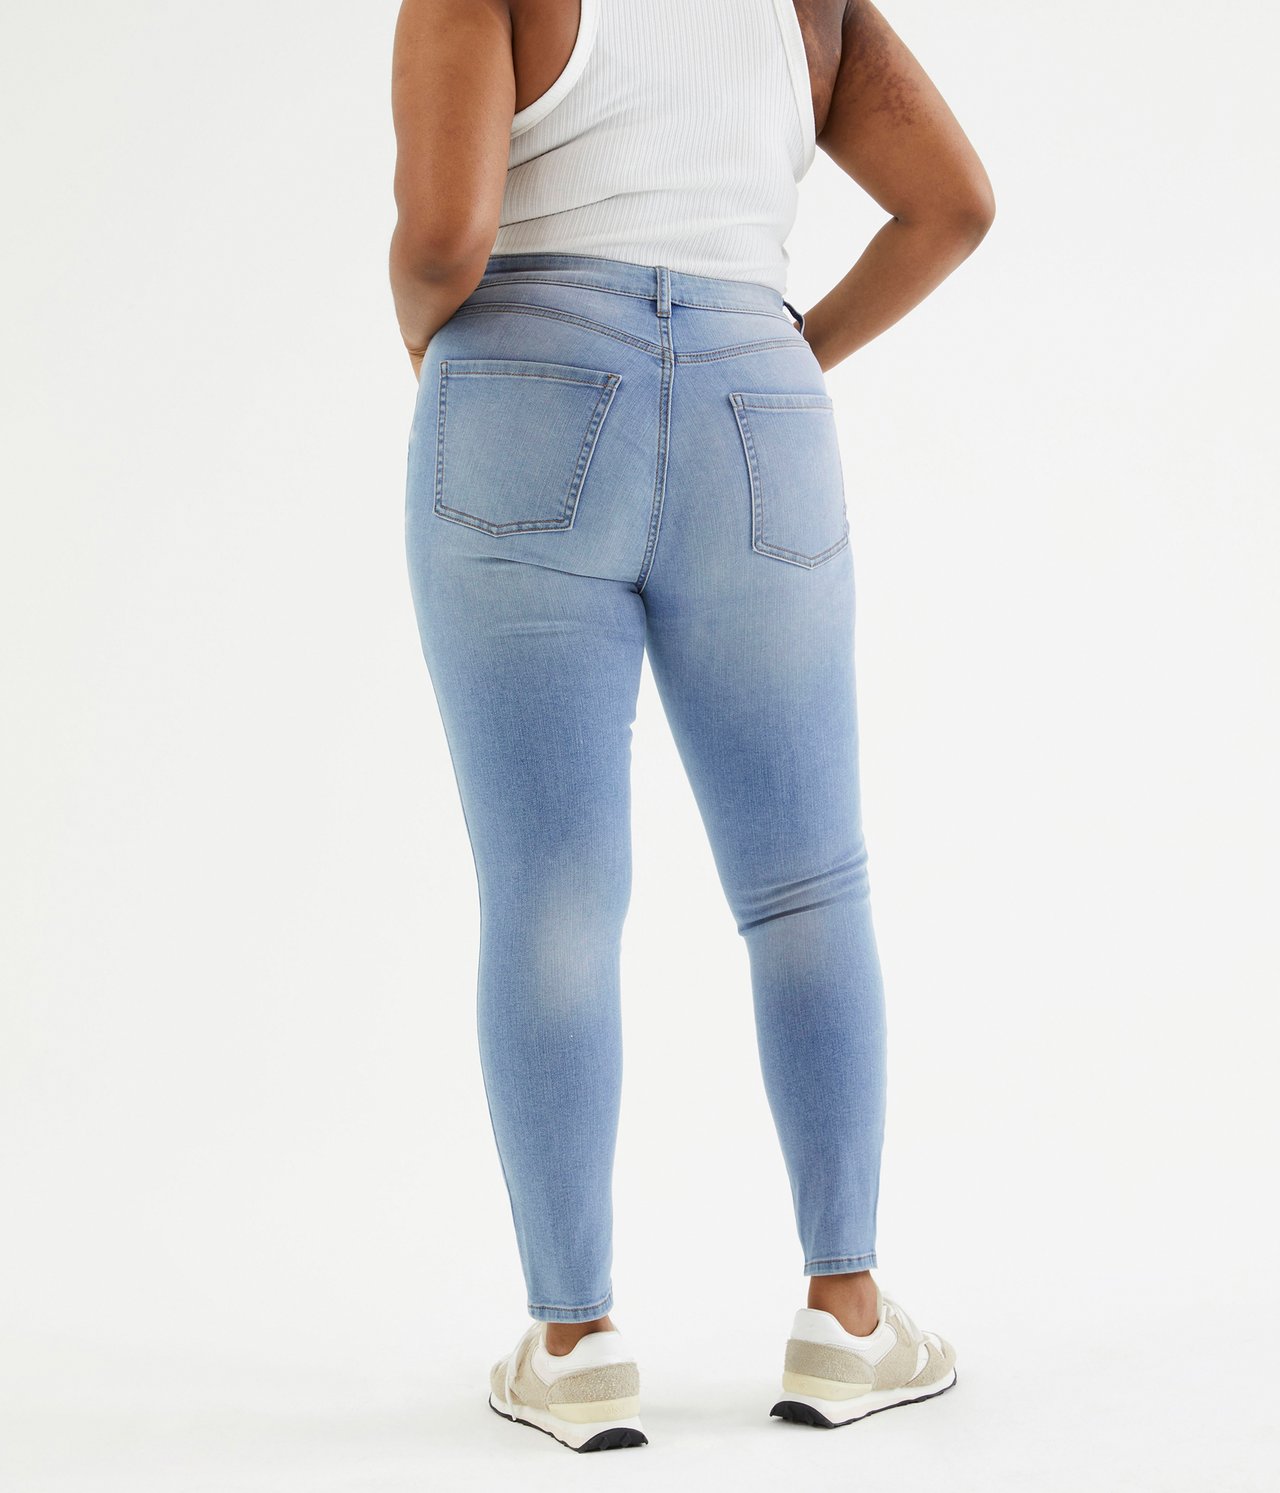 Cropped Slim Jeans Mid Waist - Jasny dżins - 6